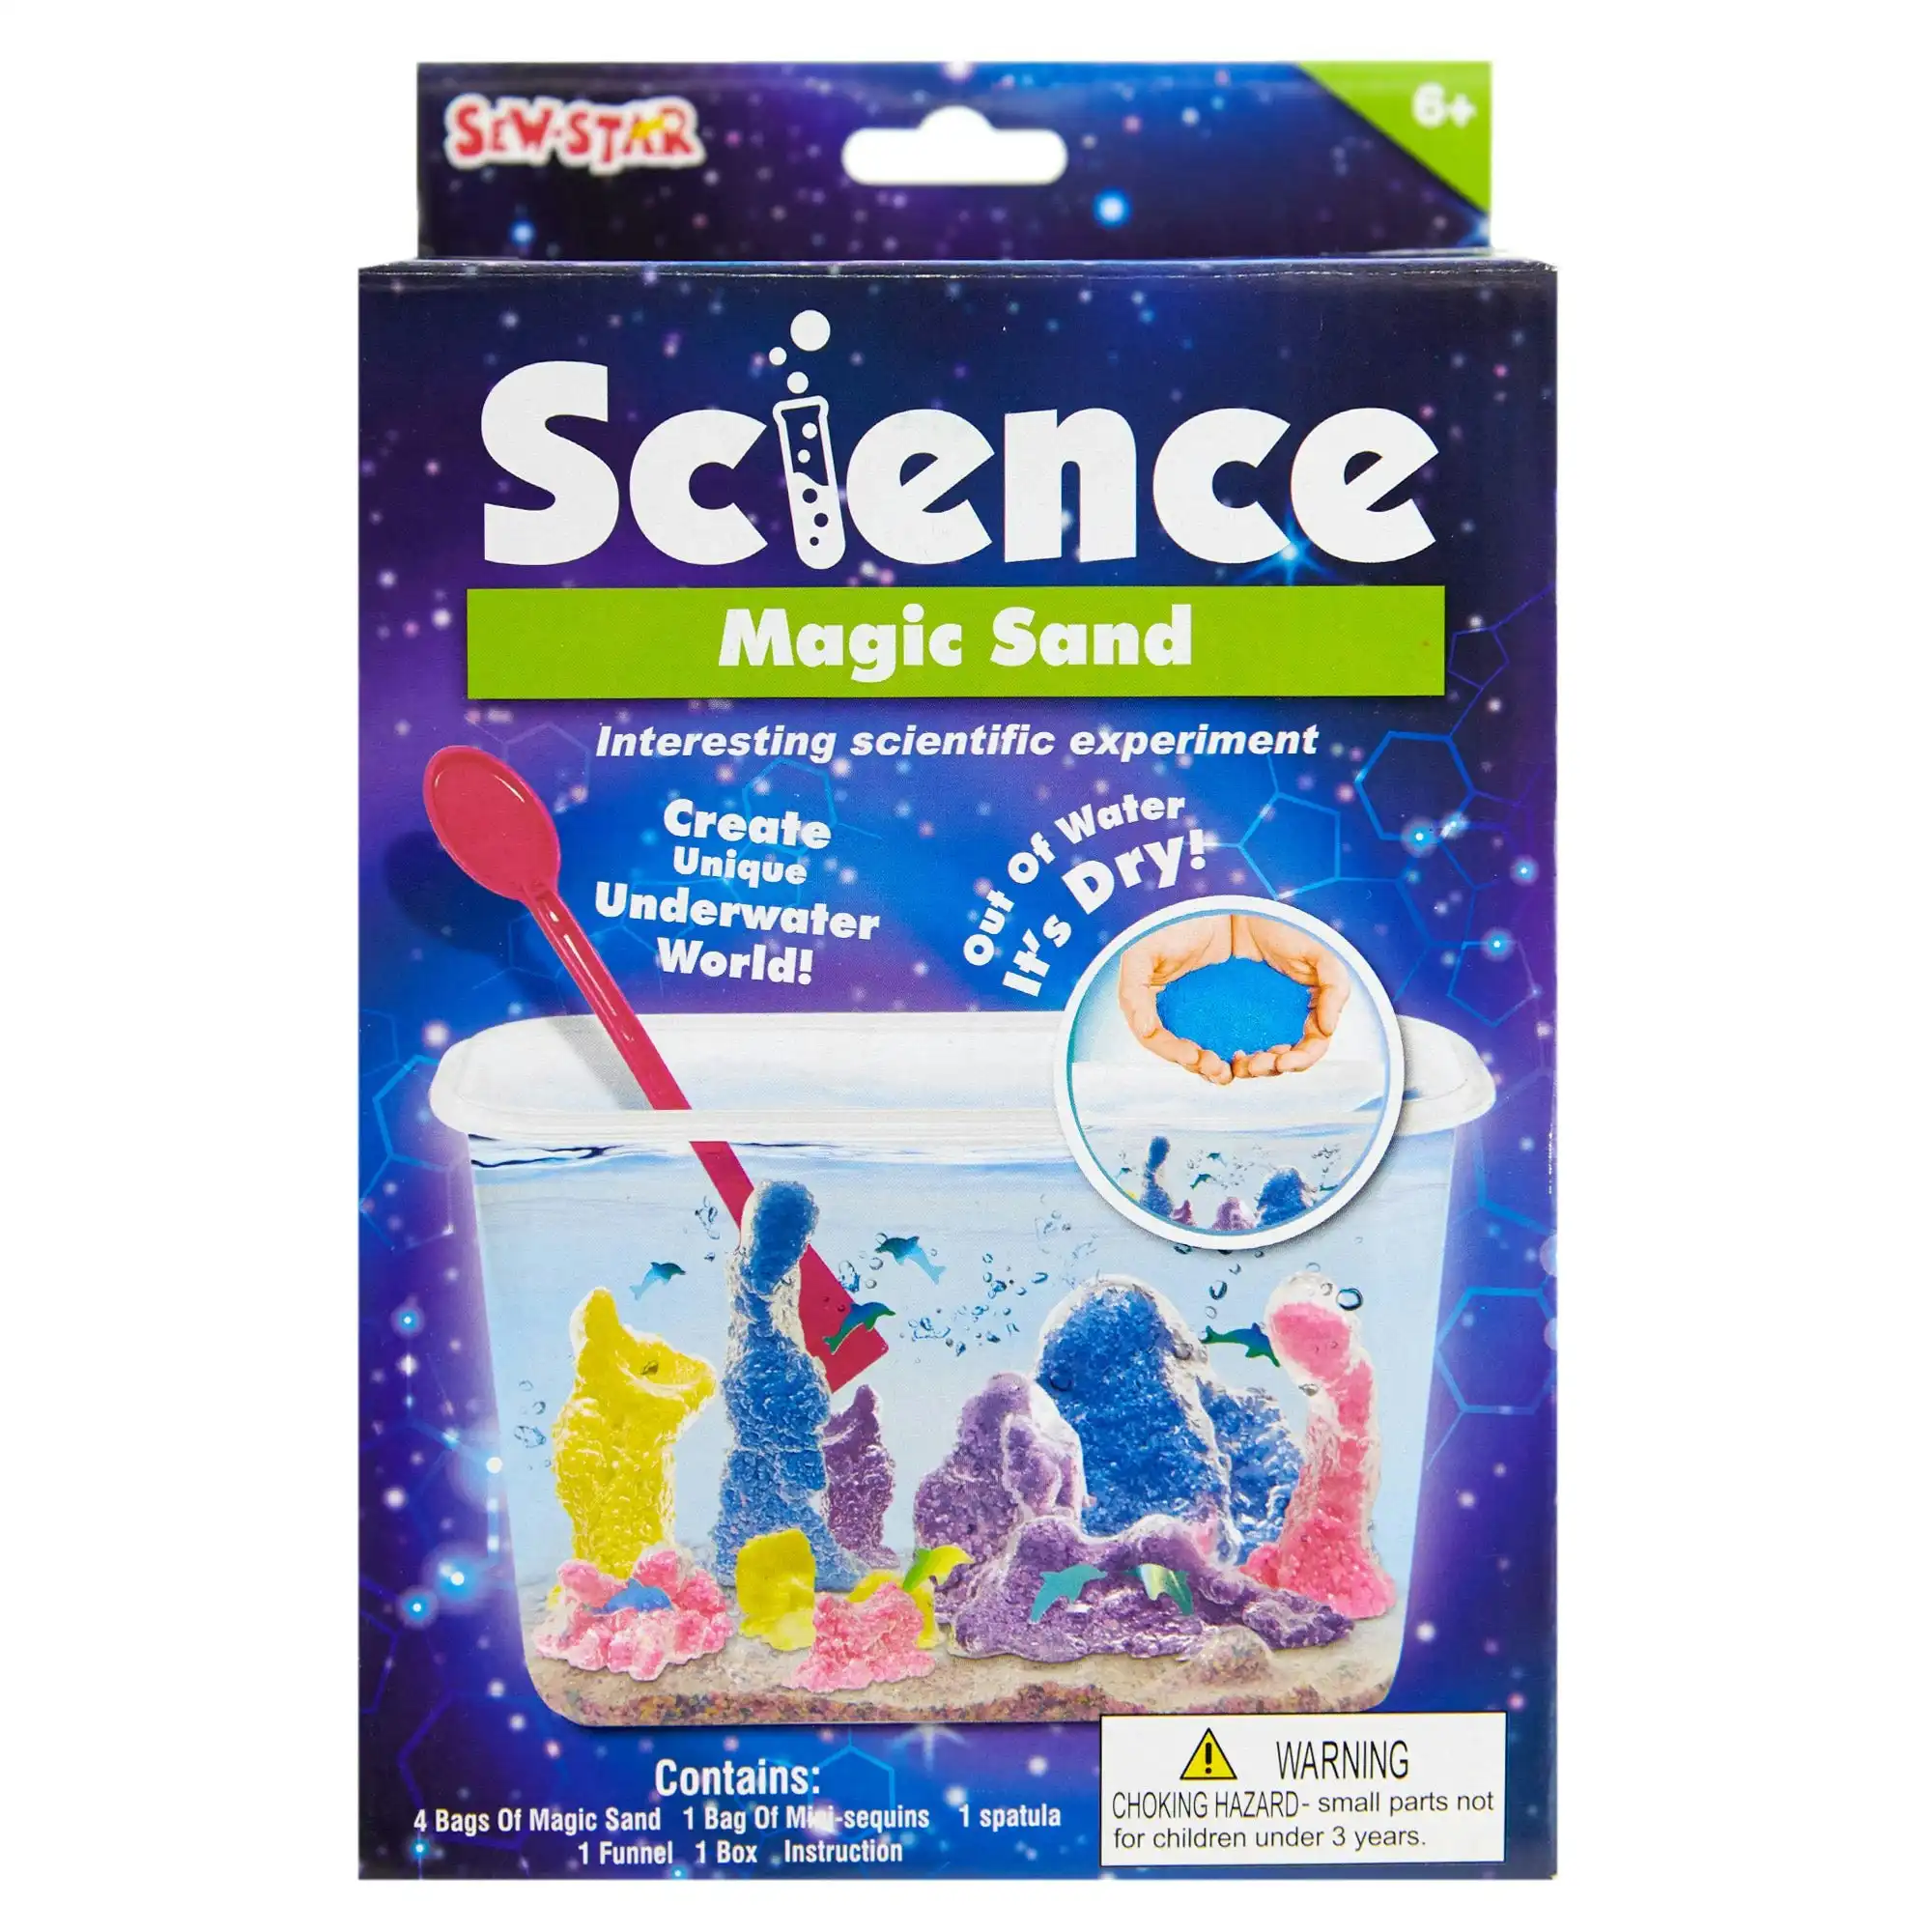 Sew Star Science Kit, Magic Sand